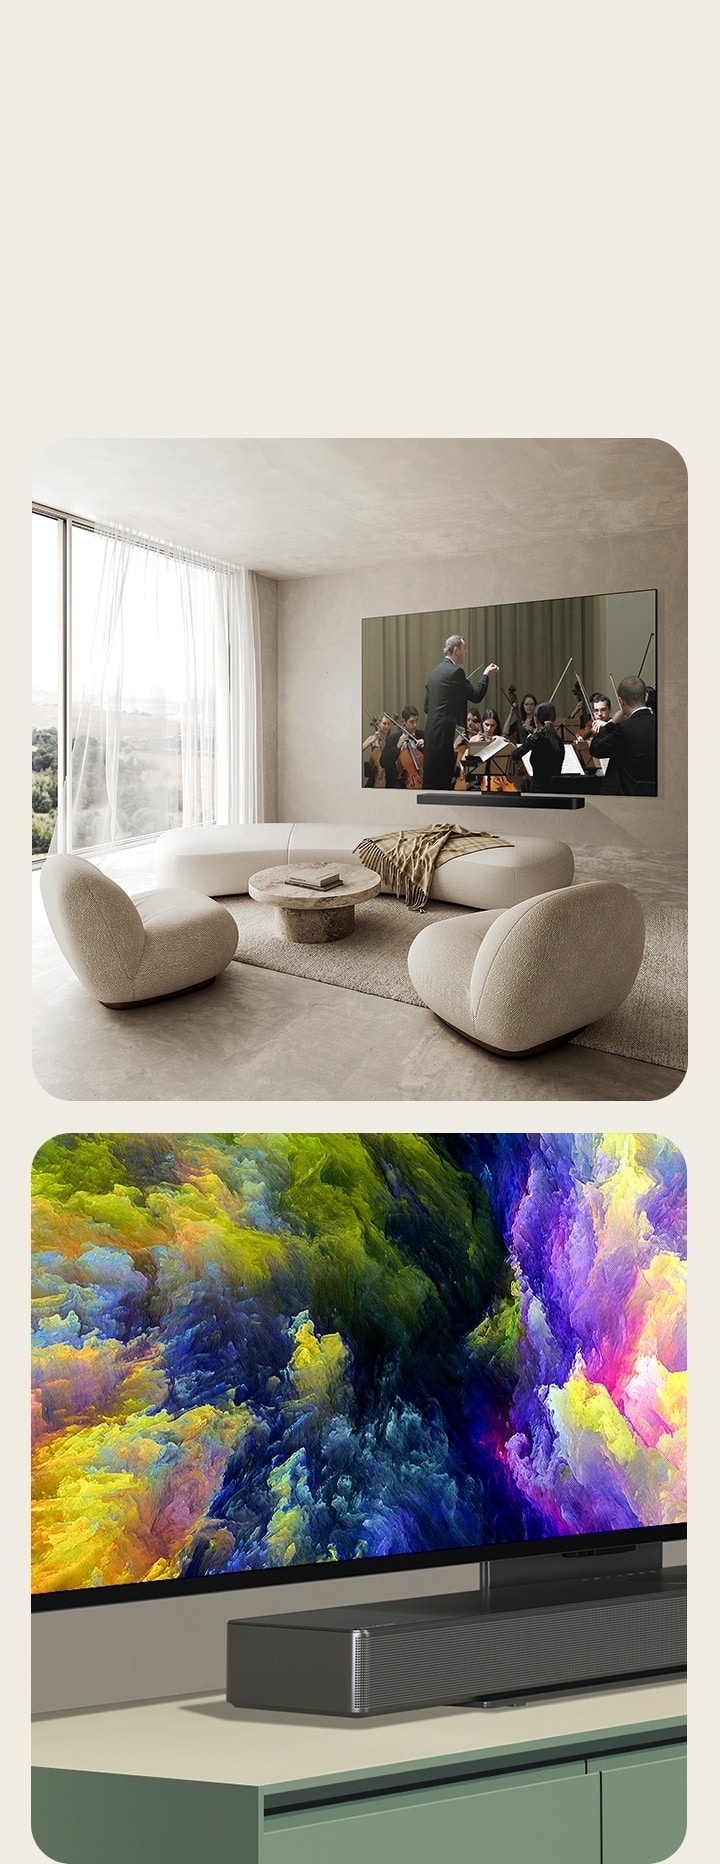 Una perspectiva en ángulo de la esquina inferior de OLED C4 que muestra una obra de arte abstracta en la pantalla. OLED C4 y una barra de sonido LG en un espacio limpio y plano contra la pared con una actuación orquestal en la pantalla.